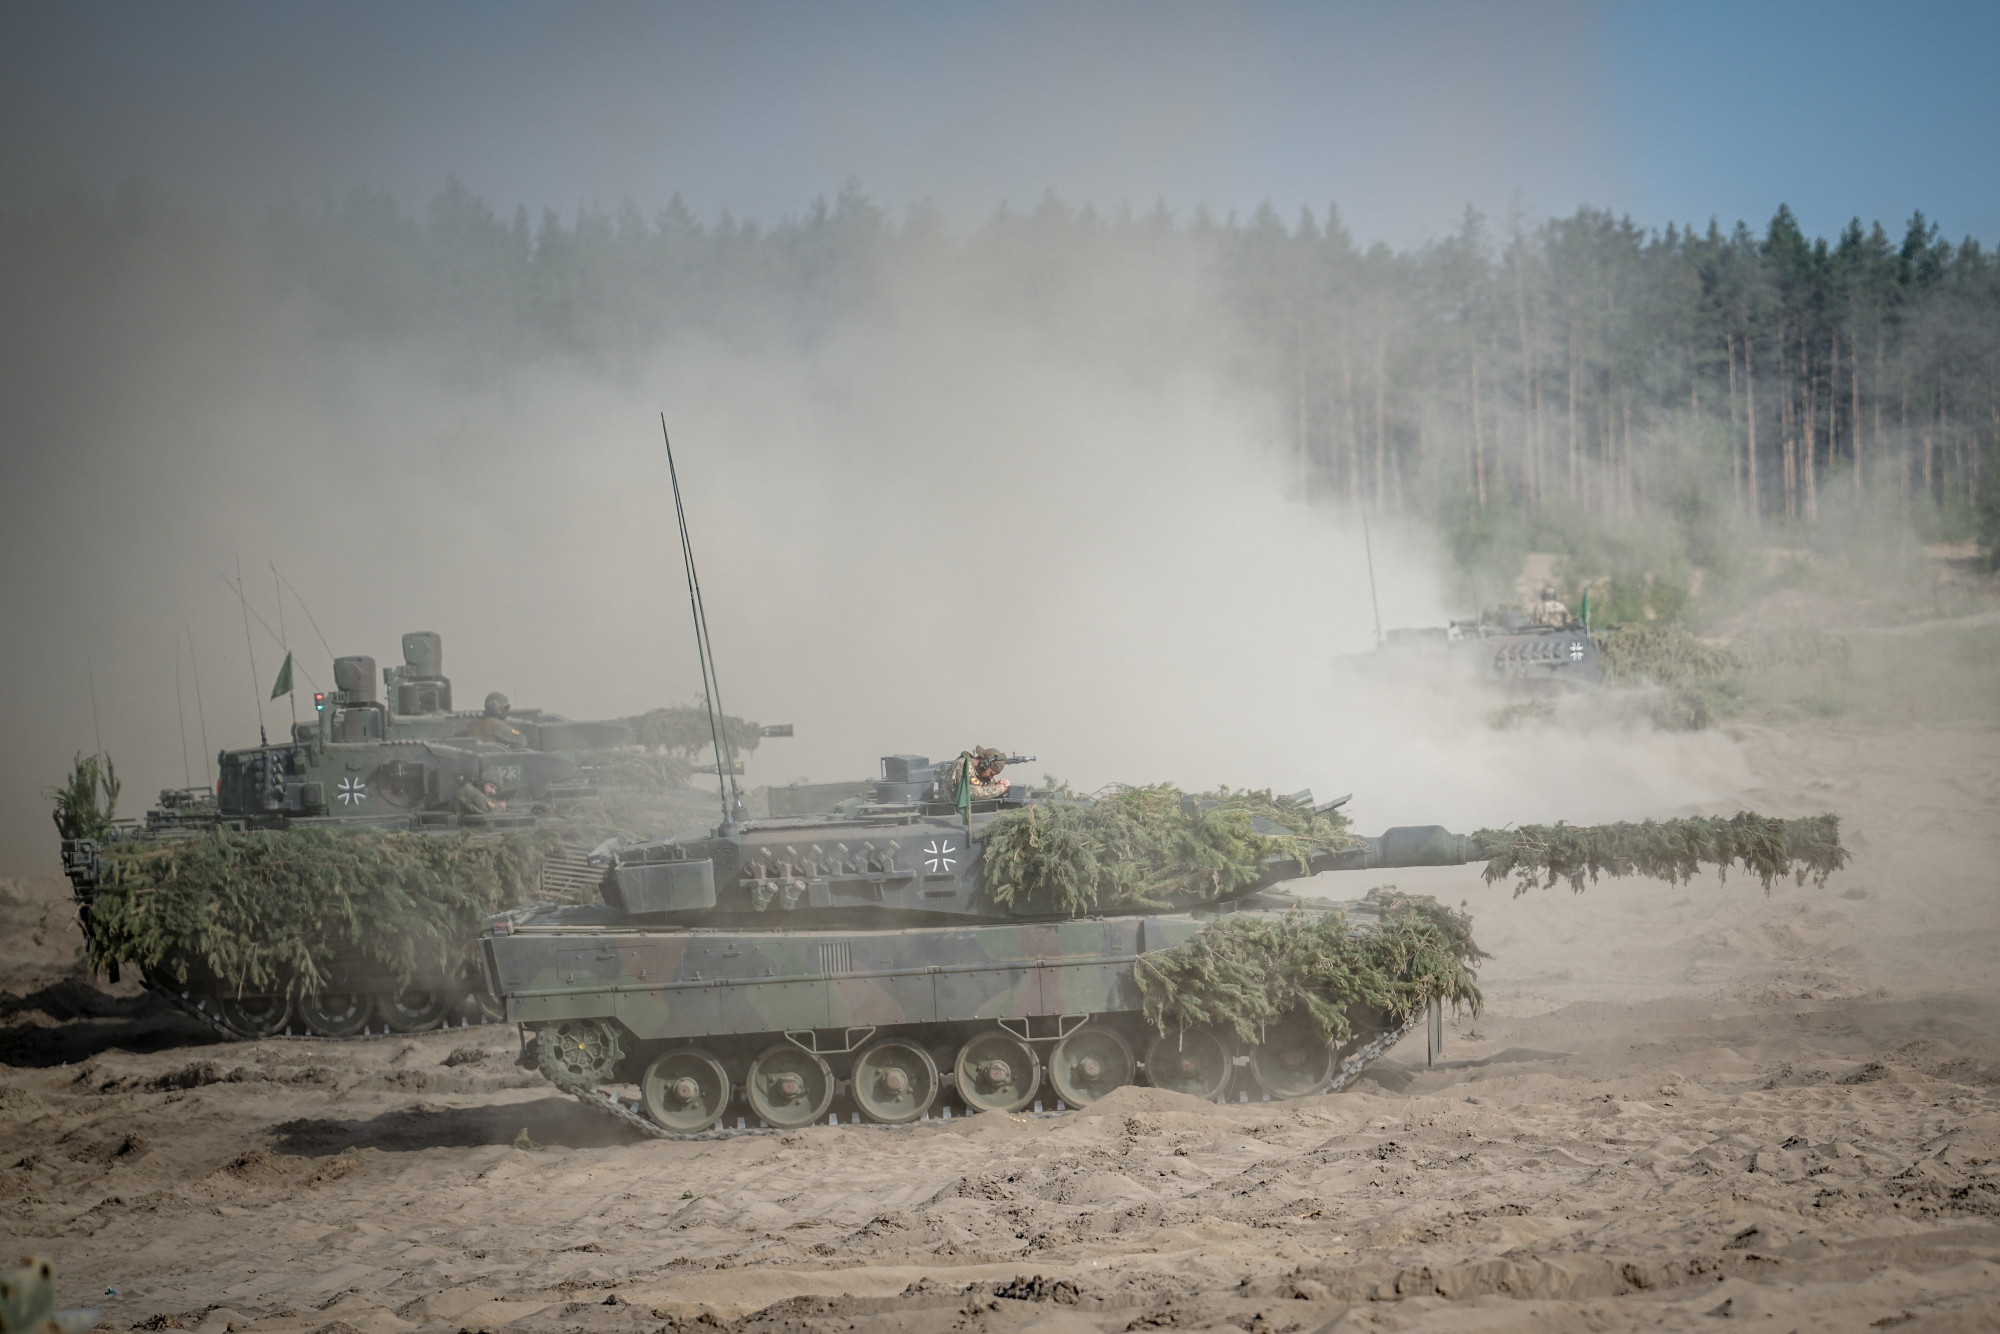 NATO hadgyakorlat Litvániában, amely során a NATO keleti határának megvédésére készülnek fel